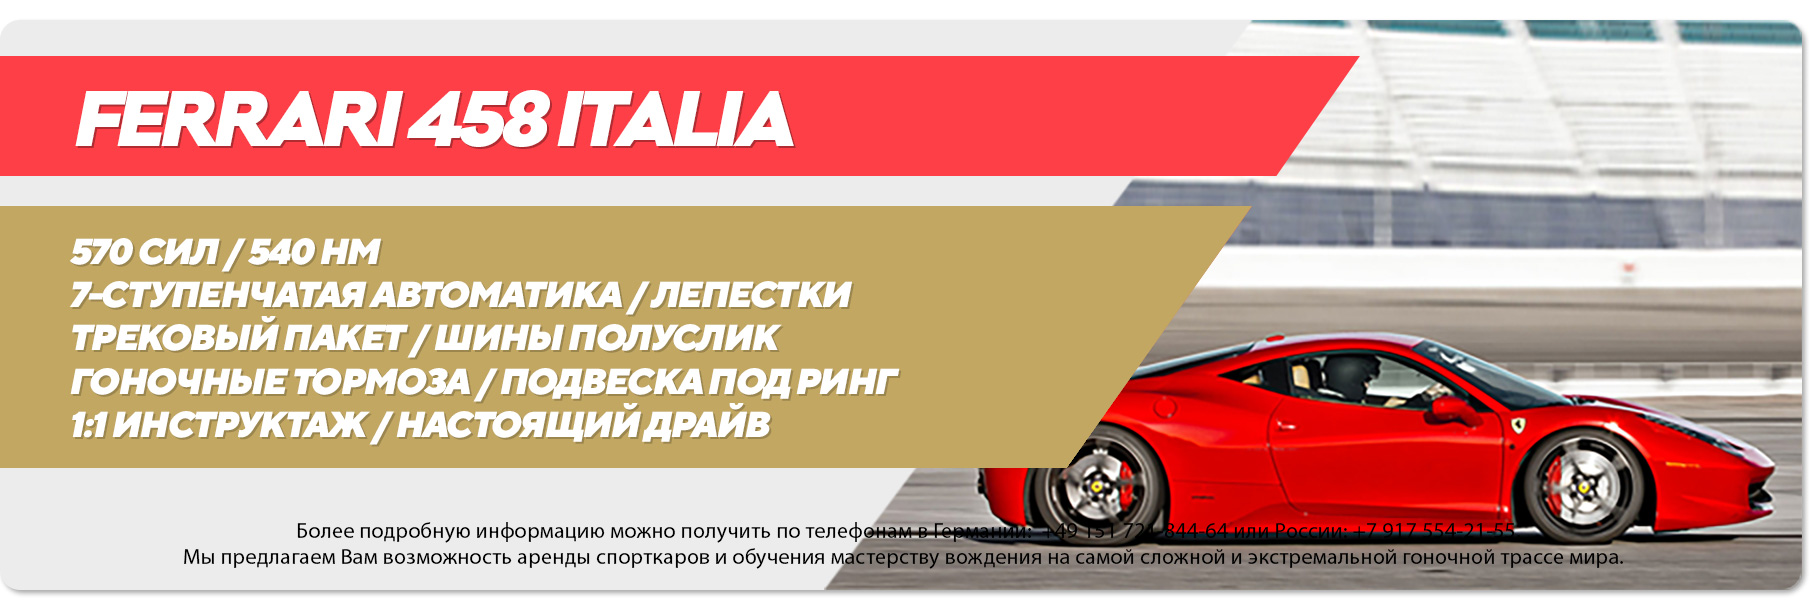 Подарочный сертификат Ferrari